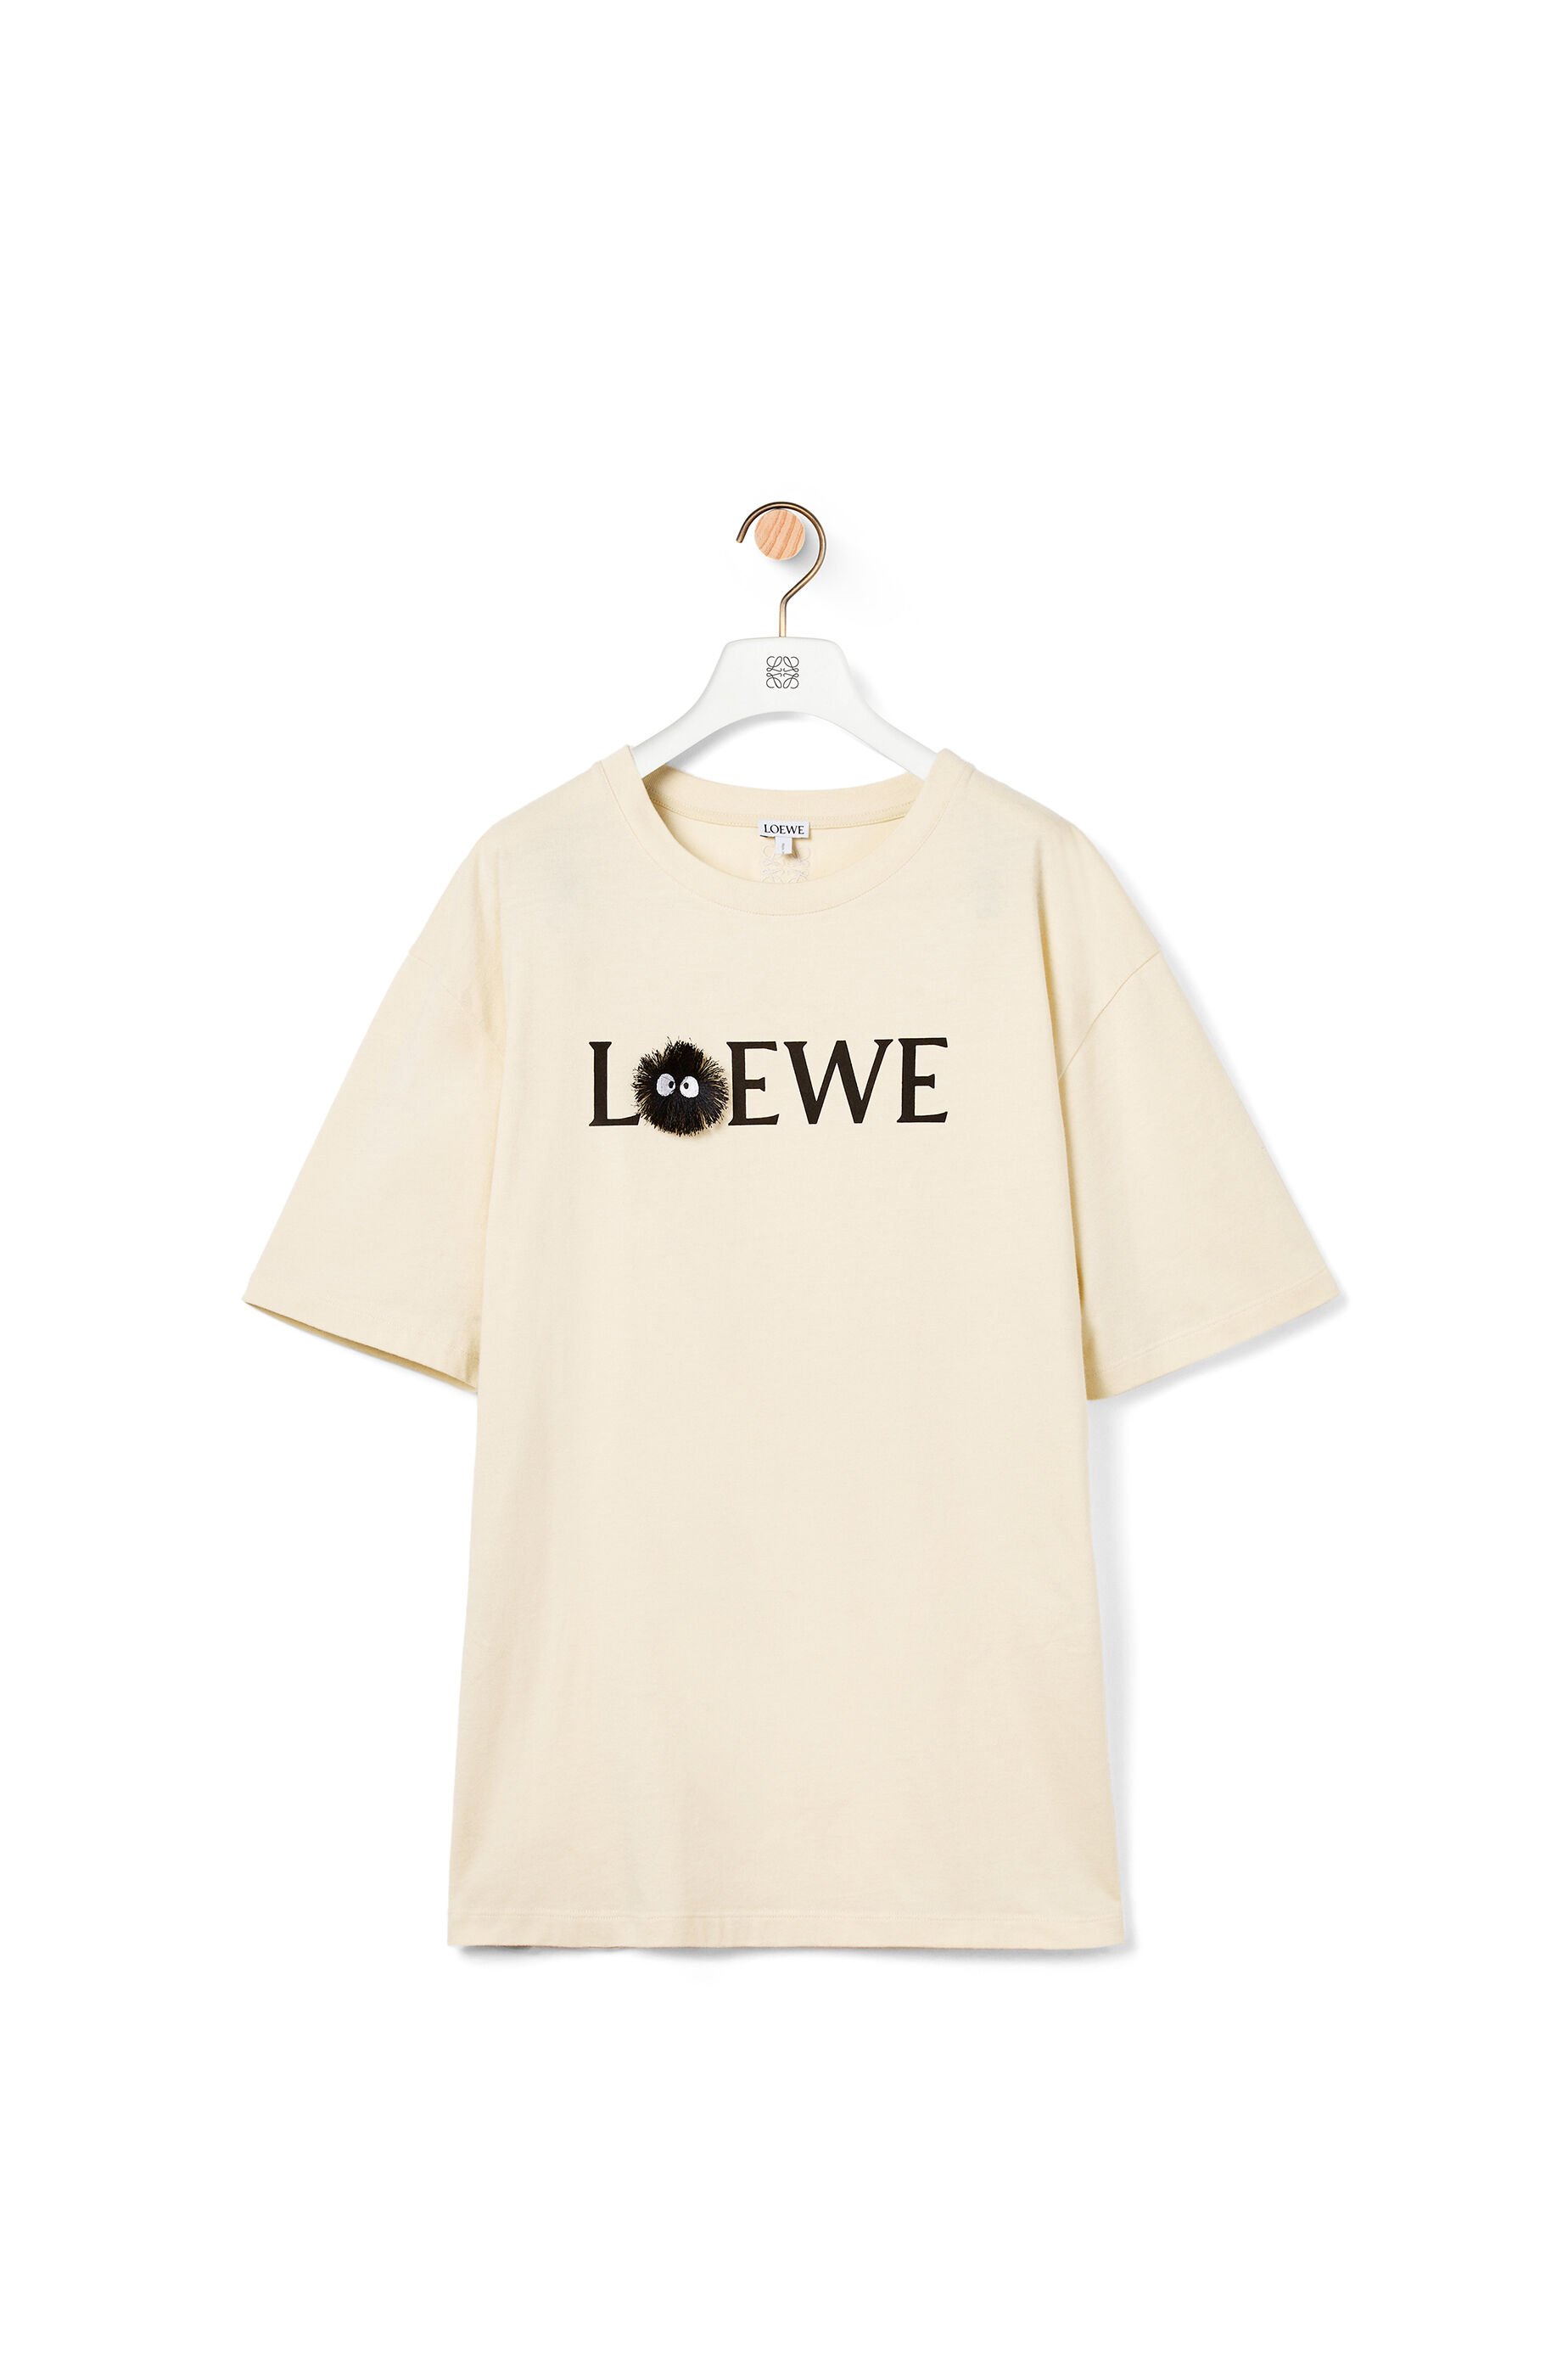 loewe logo t shirt